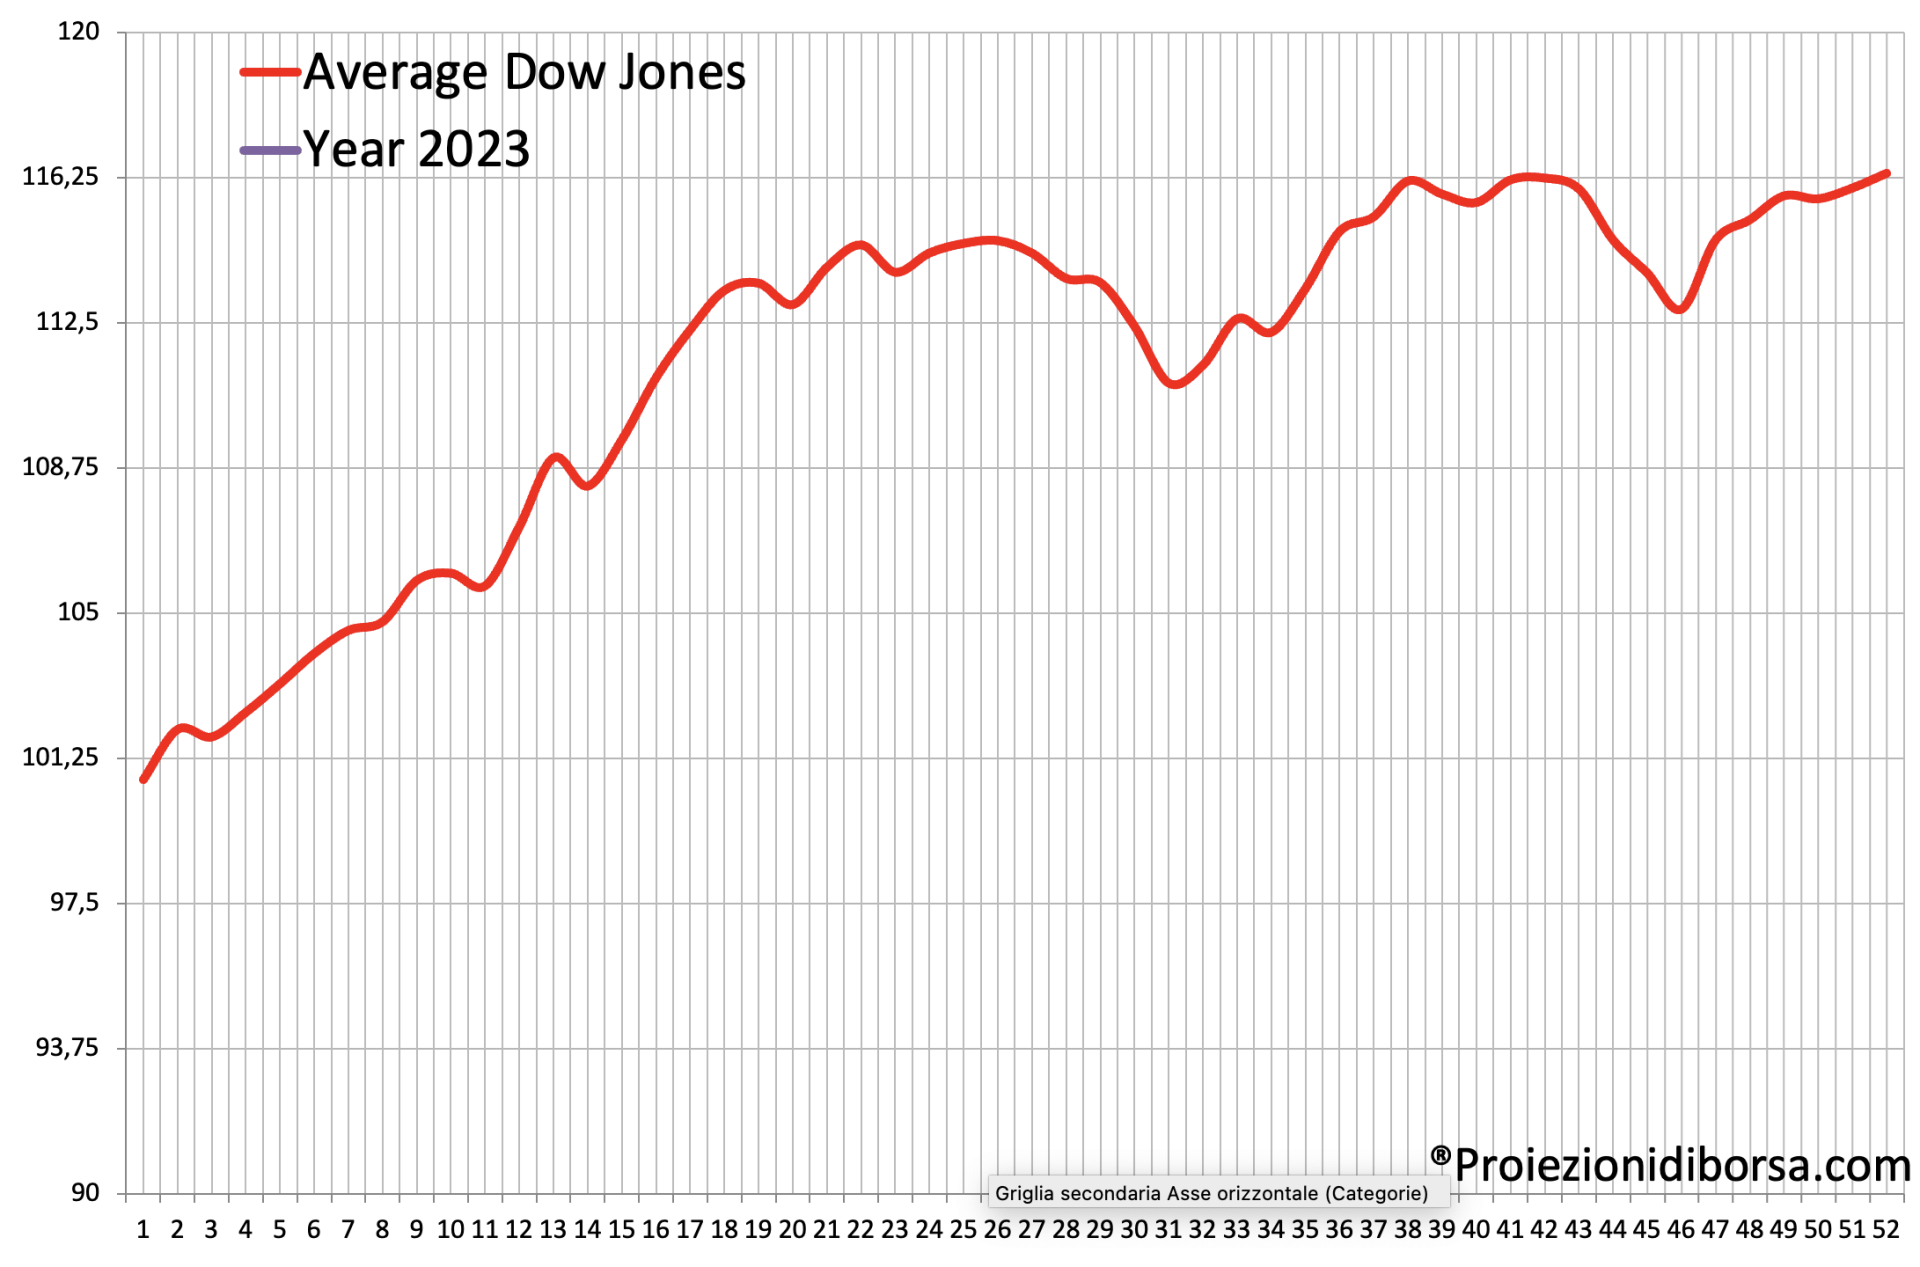 Frattale previsionale sul Dow Jones per il 2023